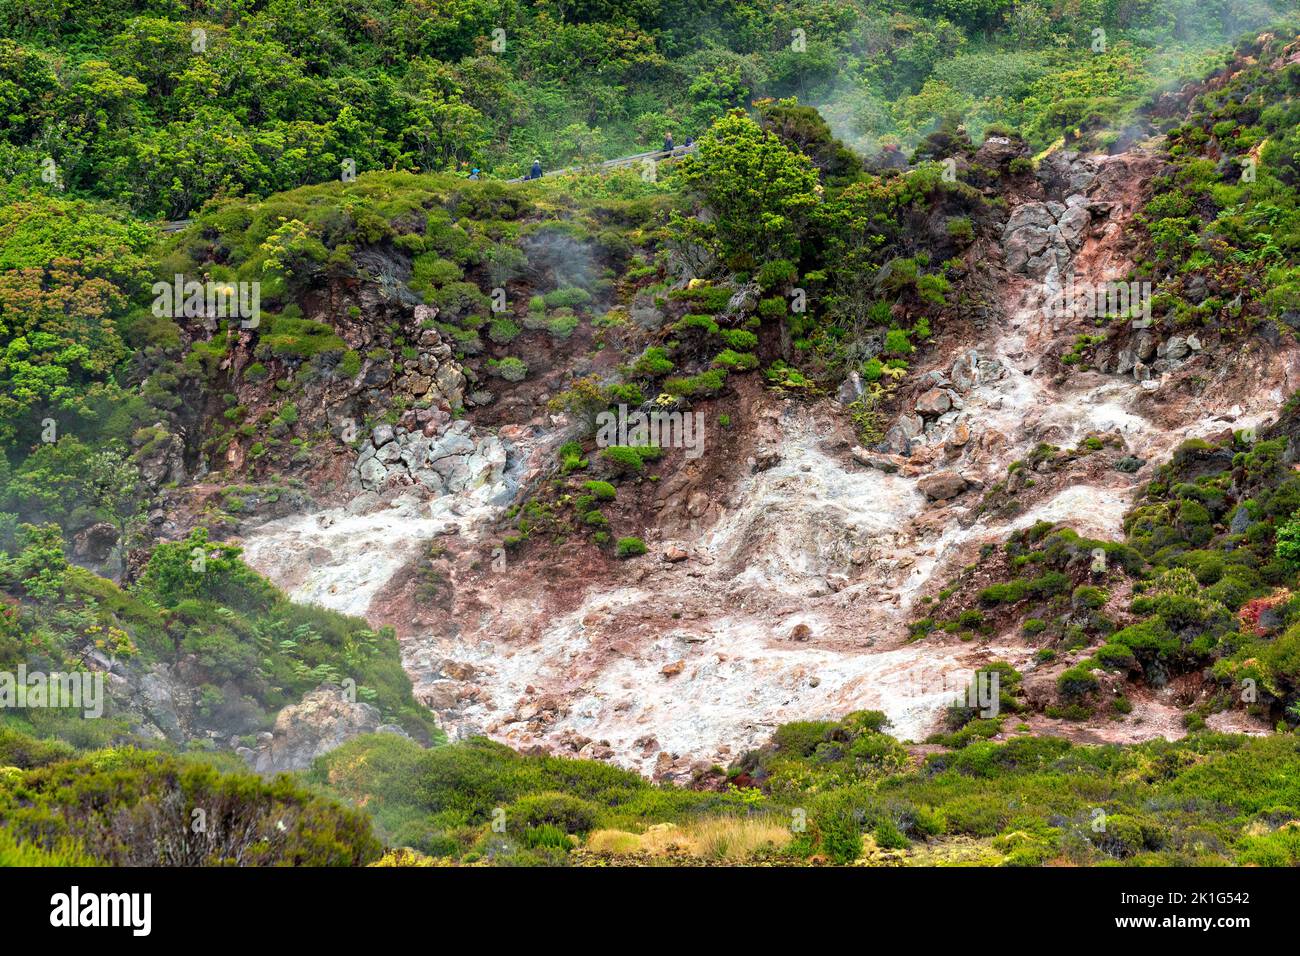 Los gases de dióxido de carbono y azufre se desprenden de fumarolas volcánicas en el parque natural Furnas do Enxofre en la isla de Terceira, Azores, Portugal. Las Azores albergan 26 volcanes activos, 8 de los cuales están bajo el agua. Foto de stock